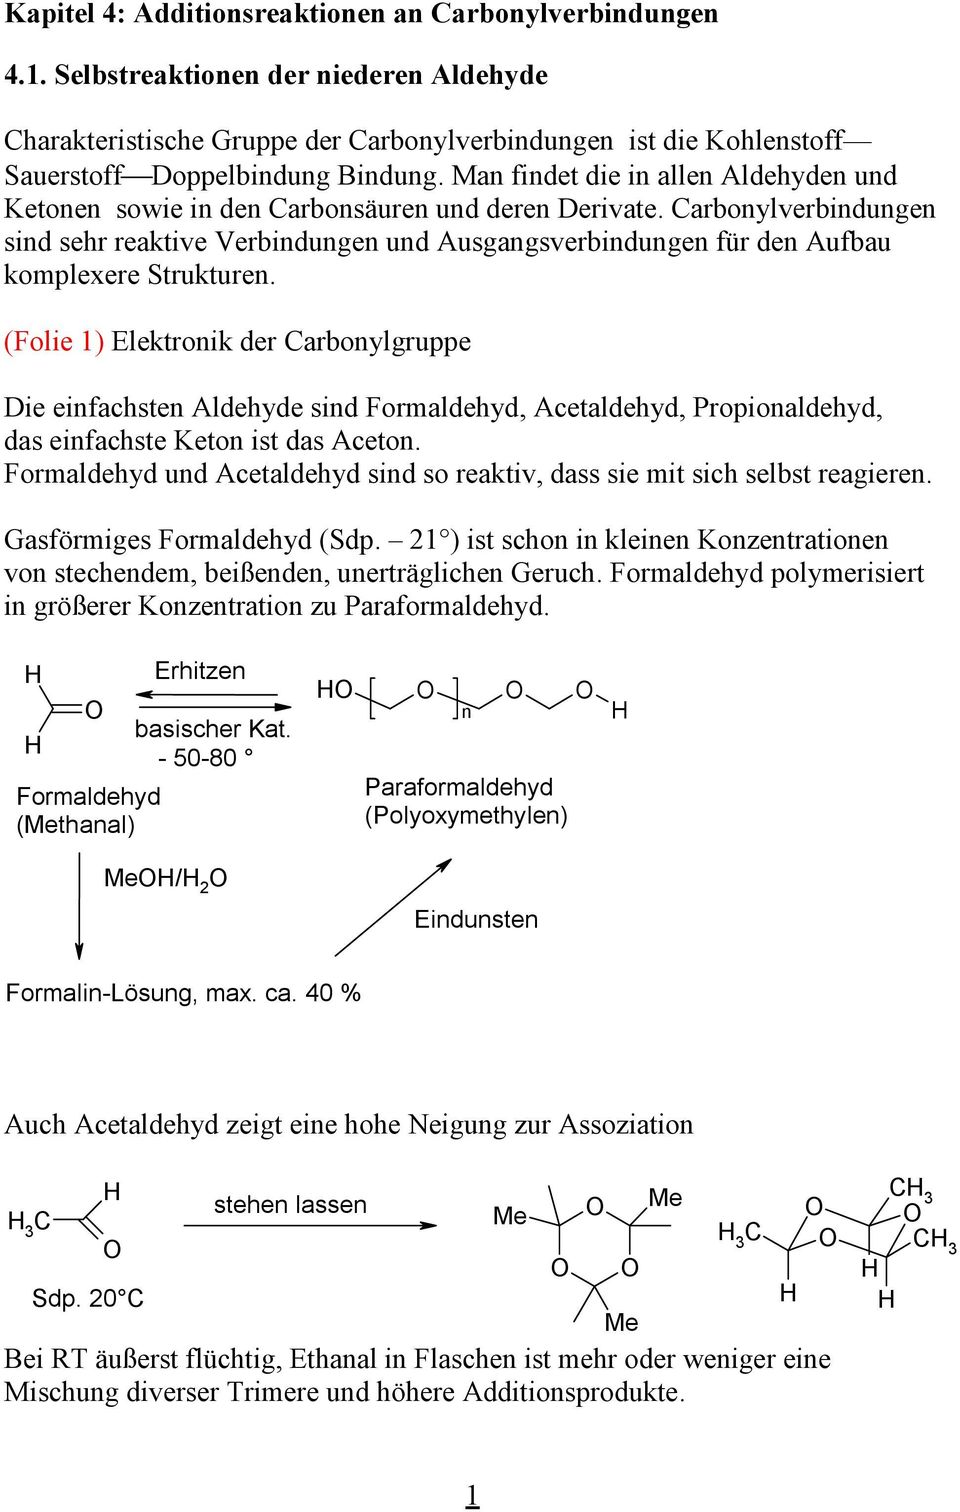 arbonylverbindungen sind sehr reaktive Verbindungen und Ausgangsverbindungen für den Aufbau komplexere Strukturen.